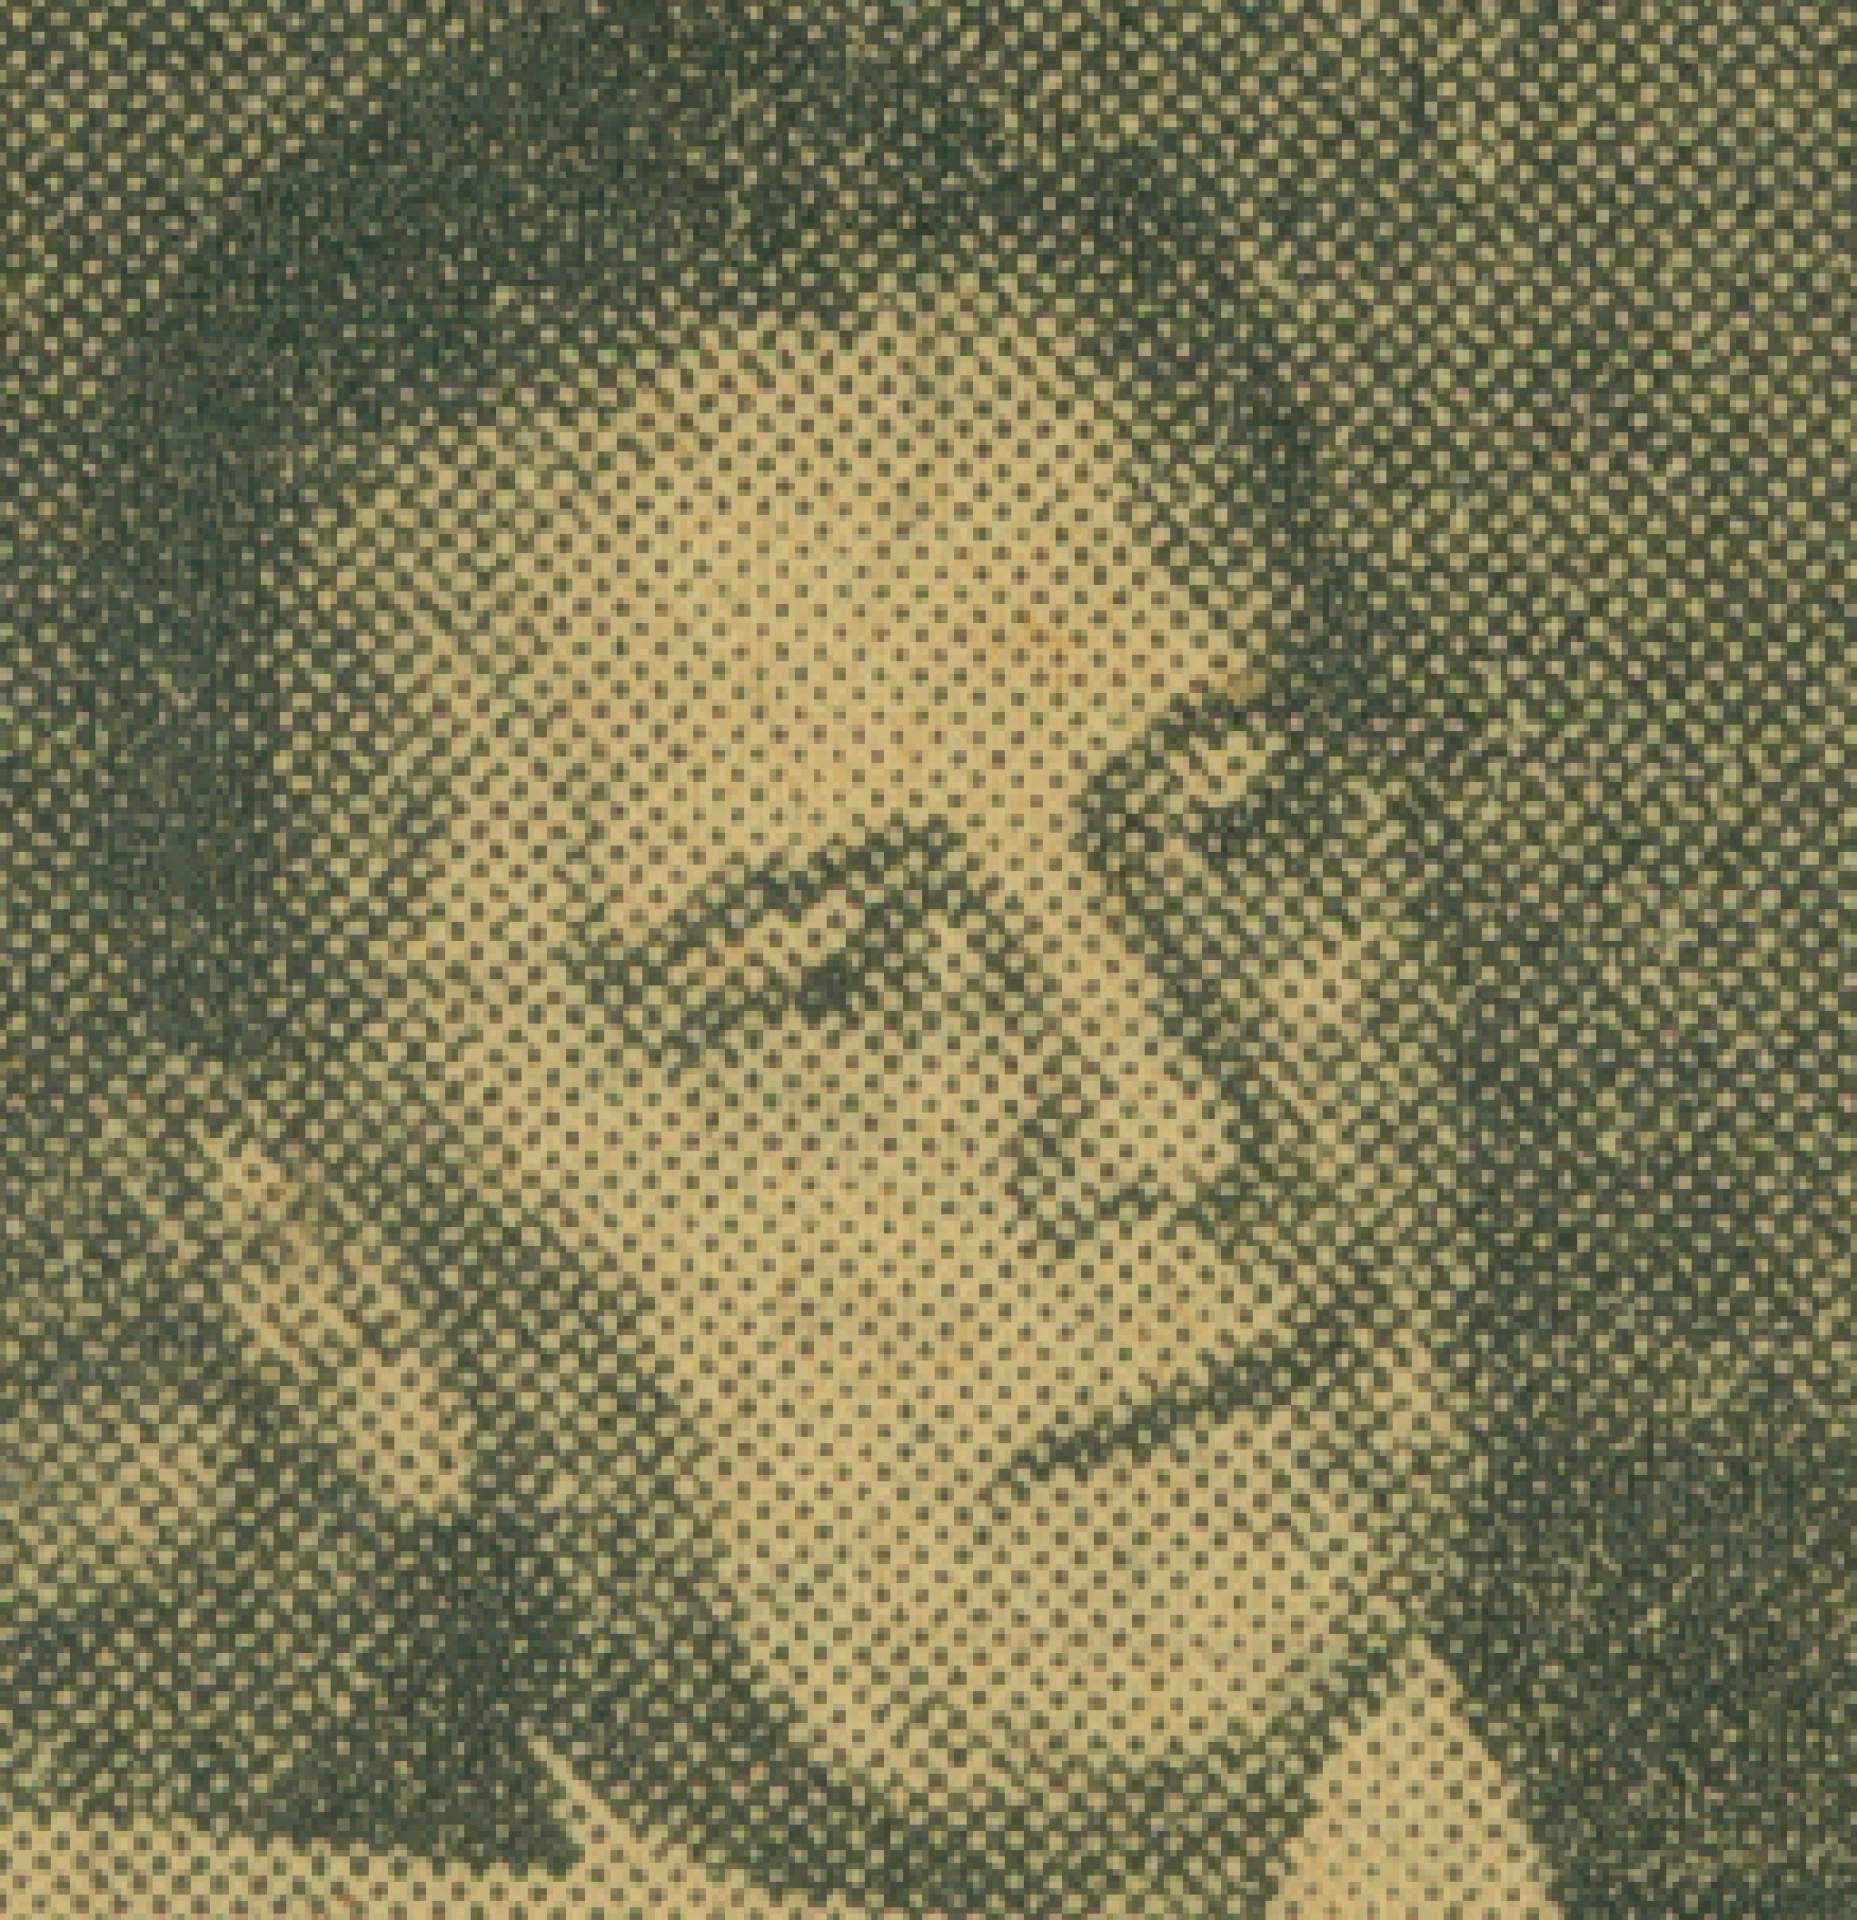 Eugene M. Dyczkowski